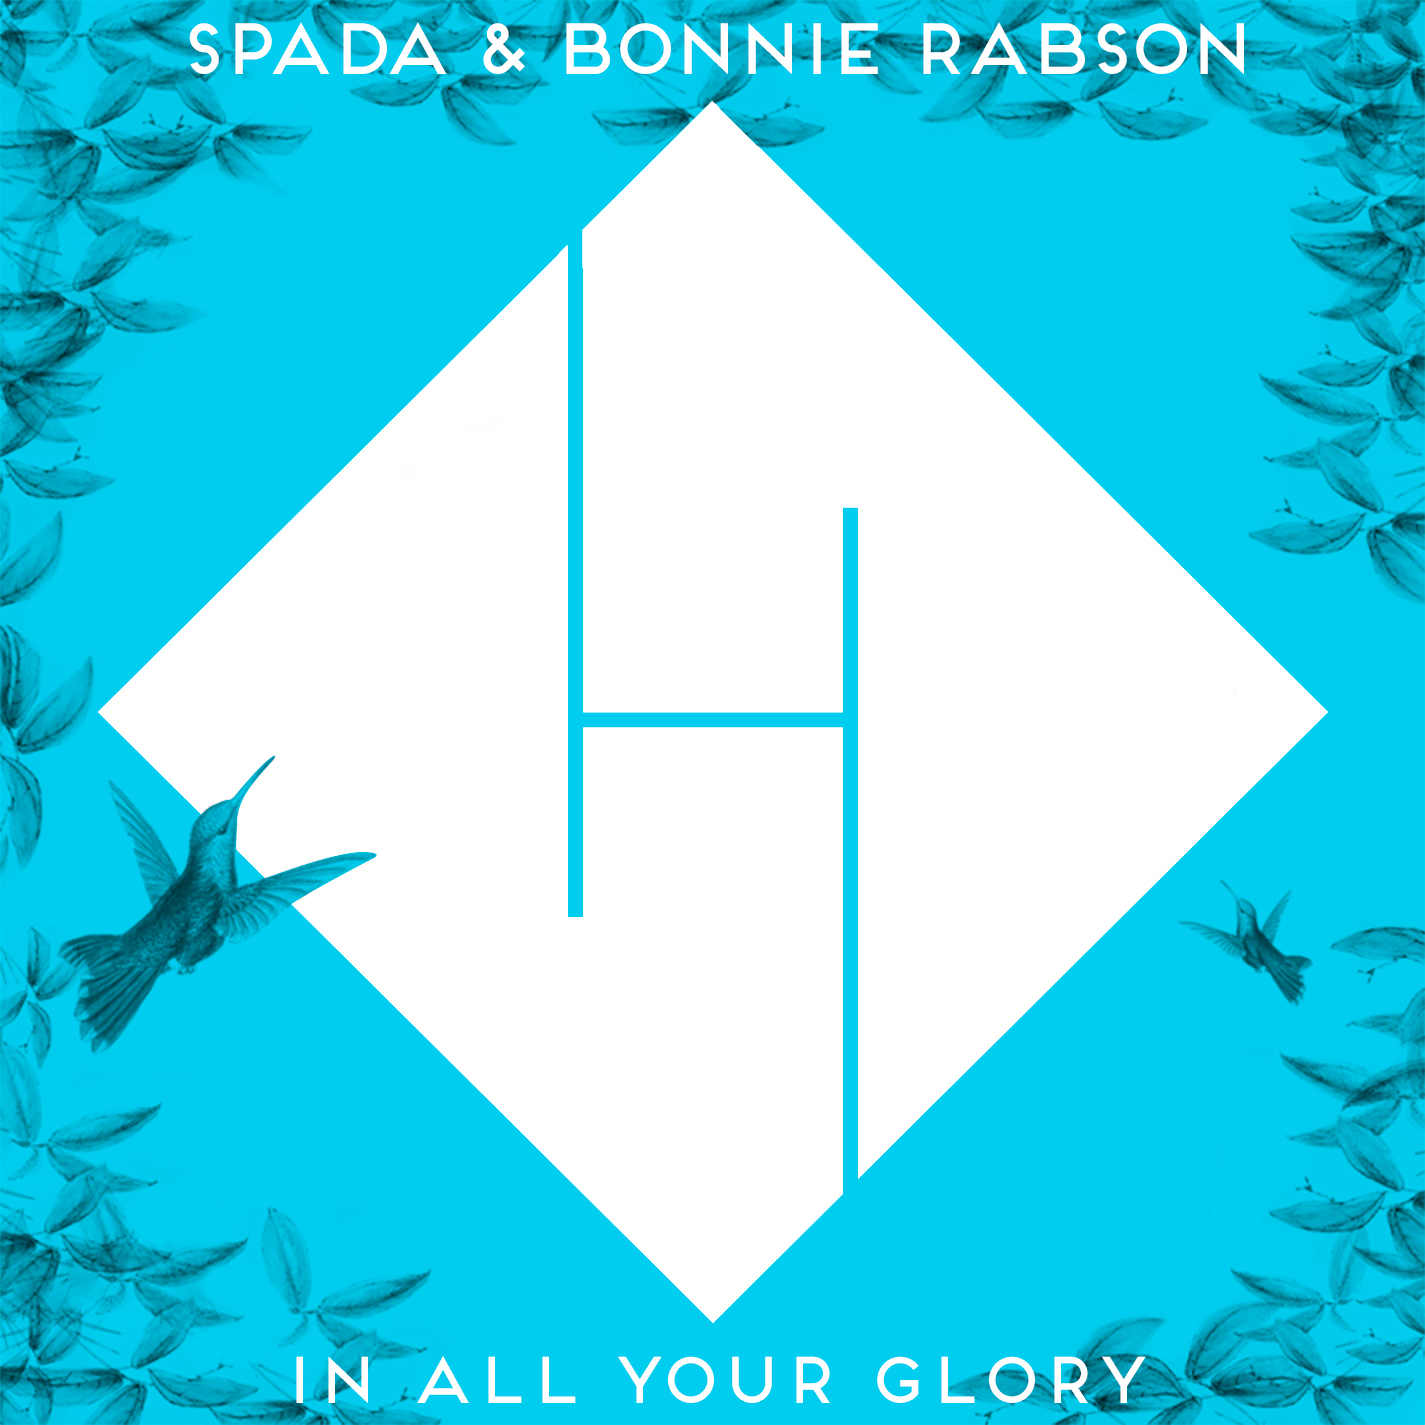 Shkarko In All Your Glory - Spada & Bonnie Rabson (Remix Boris Brejcha) PREVIEW